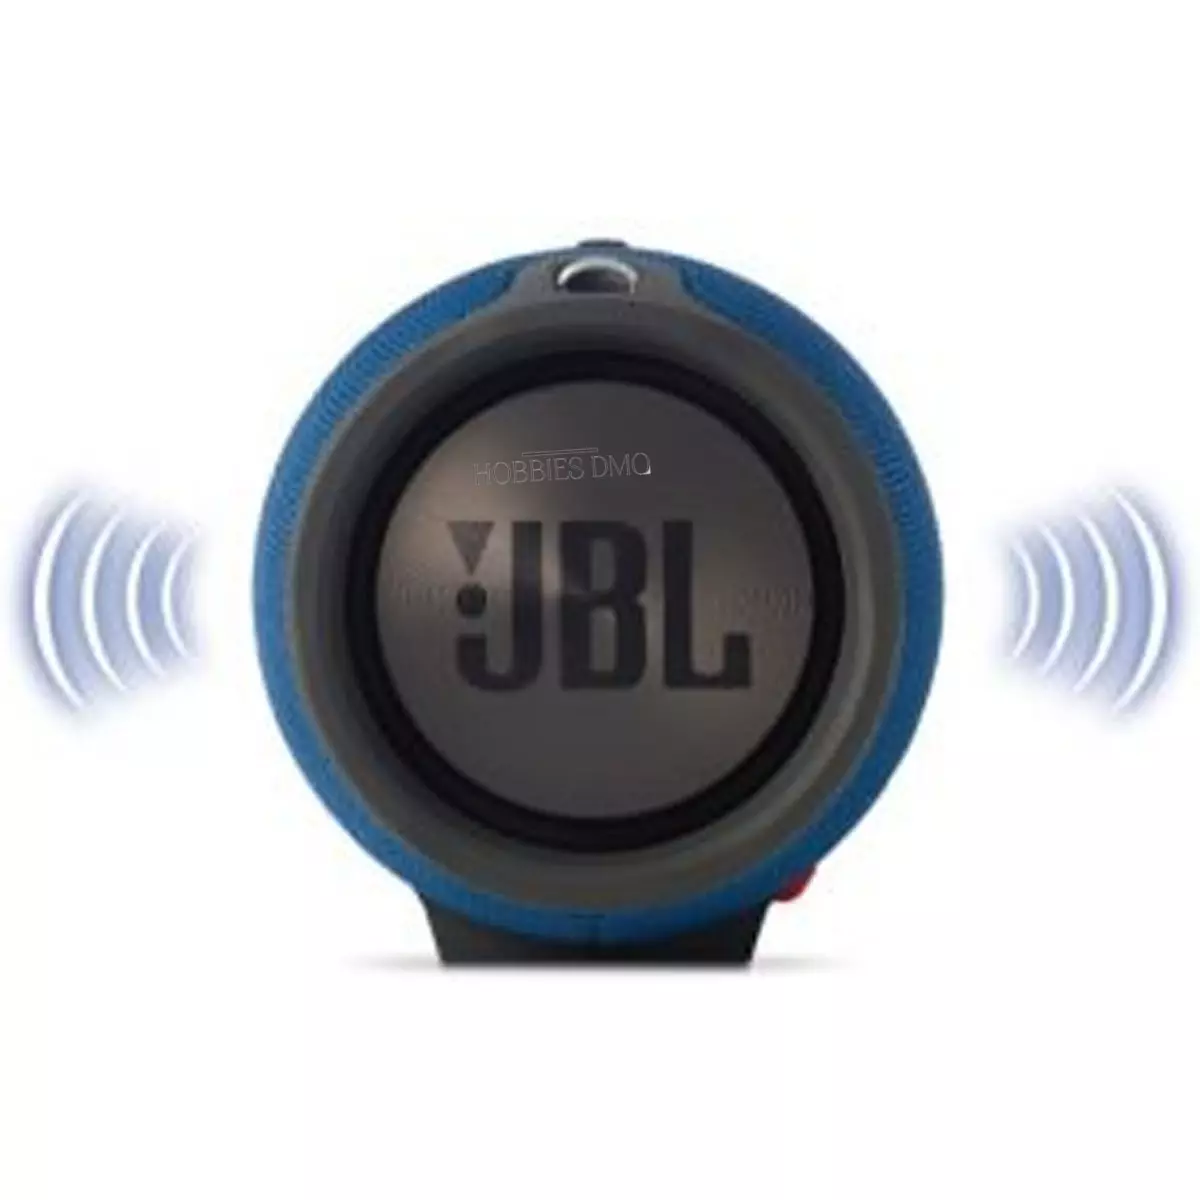 Parlante bluetooth JBL Extreme en liquidación con envío incluido 